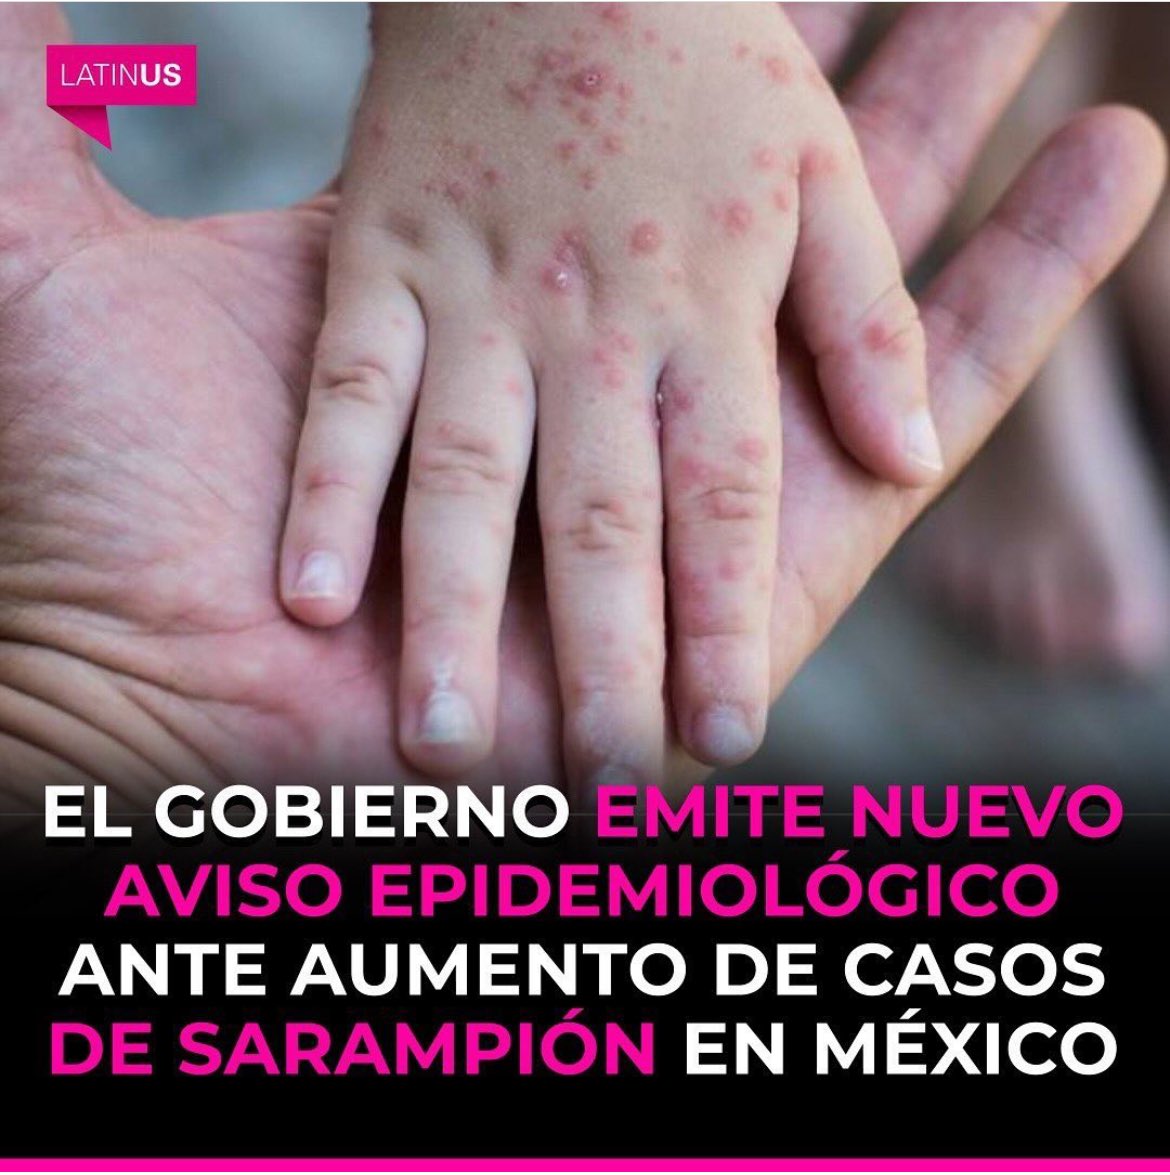 El Sarampión, la tosferina y la polio ya estaban erradicadas en México y con la criminal negligencia del #NarcoPresidenteAMLO59, resurgieron estas enfermedades, poniendo en riesgo la vida de nuestra niñez, para desviar el 💰 a donde solo ellos saben. 
😡😡😡